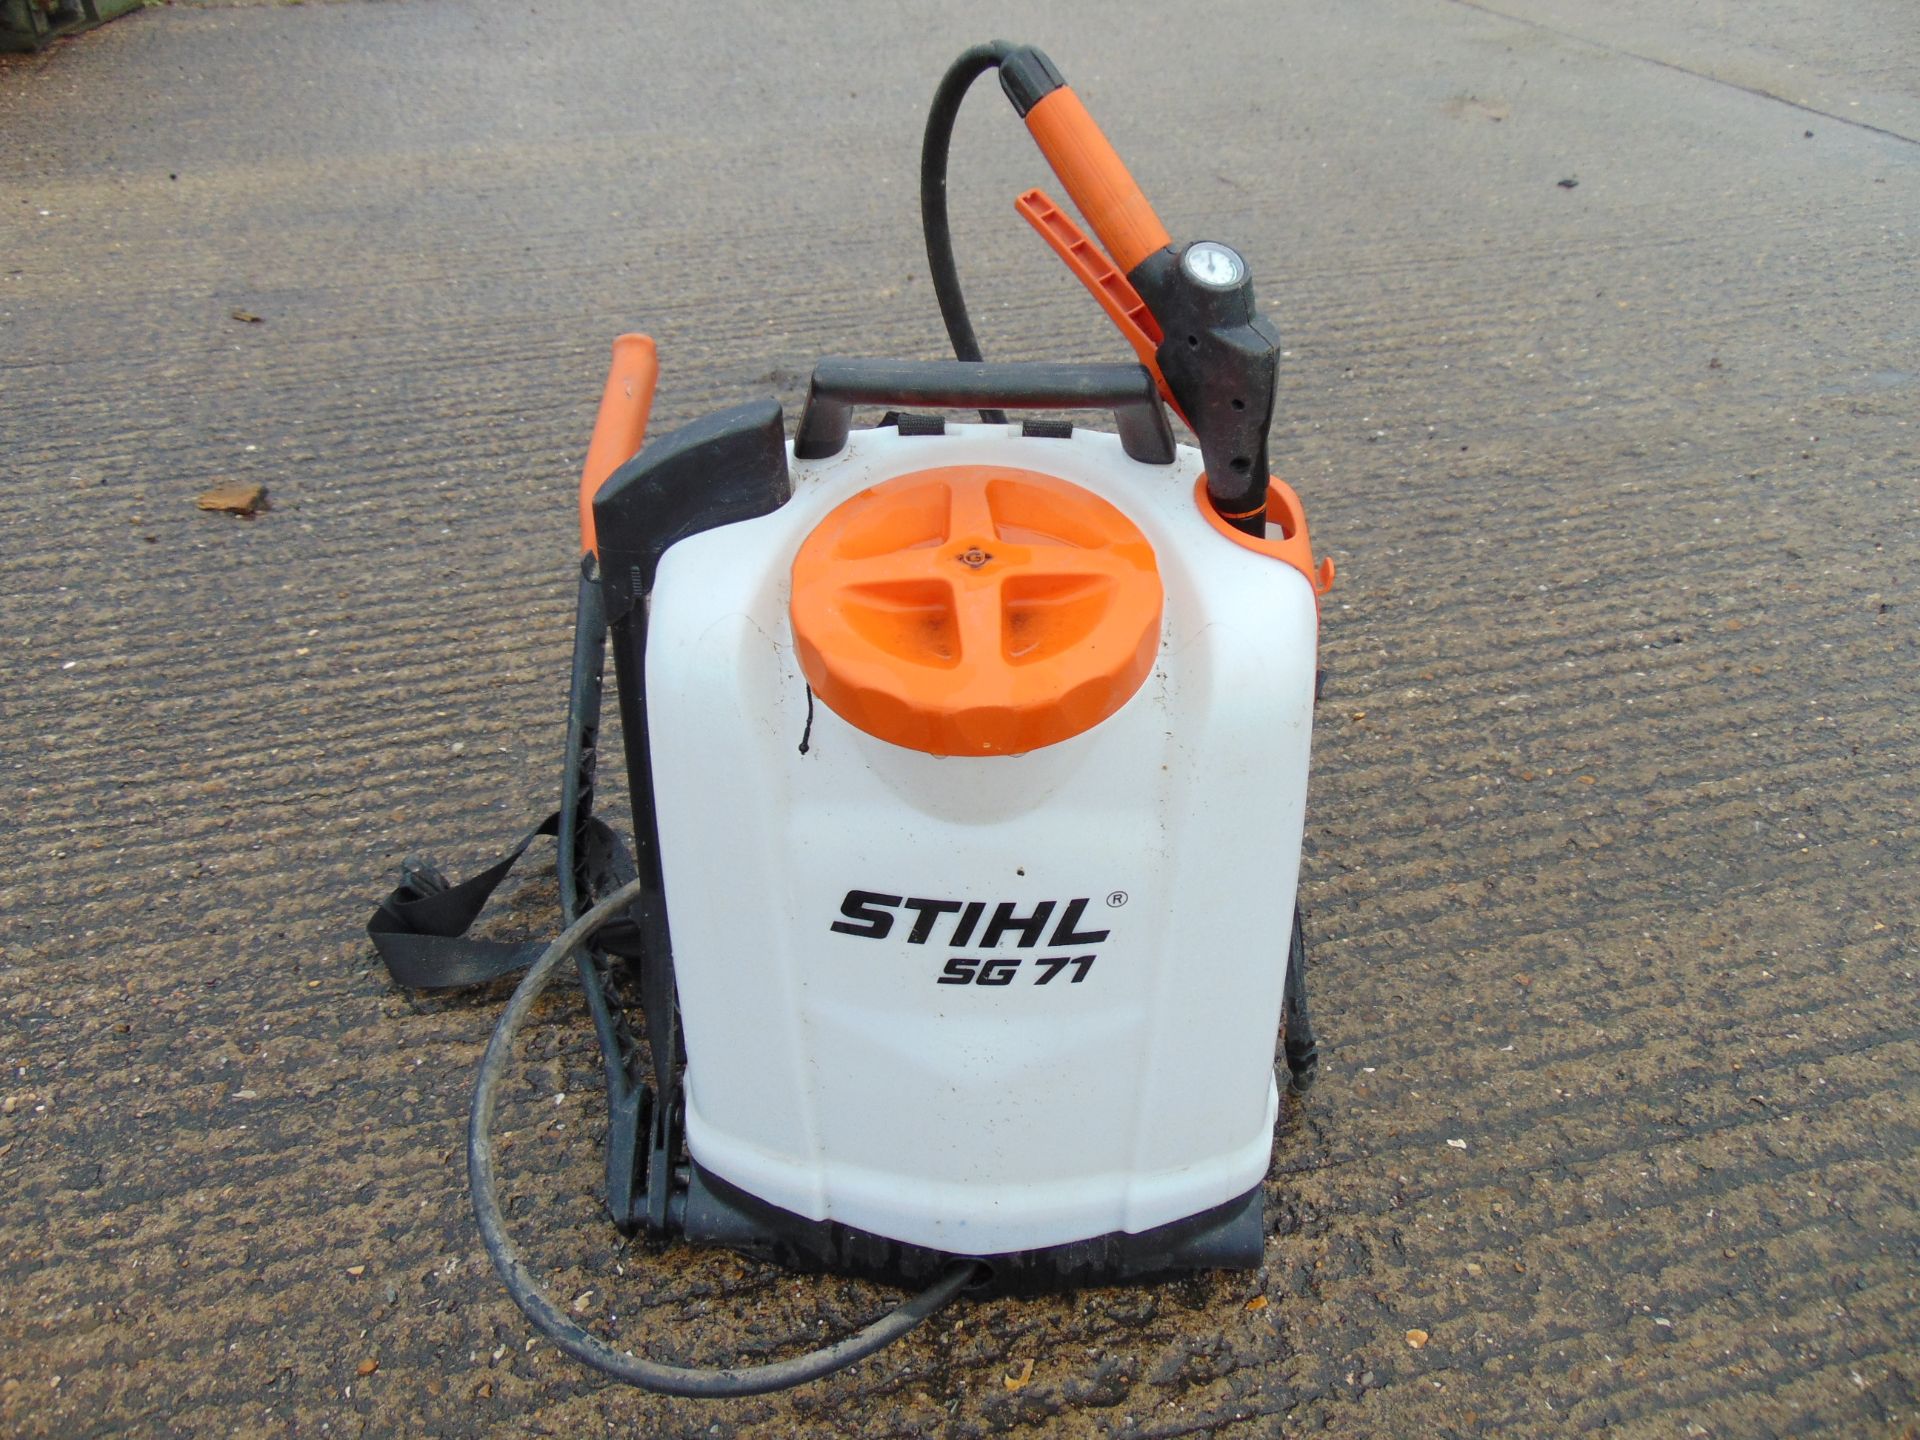 Stihl SG71 Backpack Sprayer